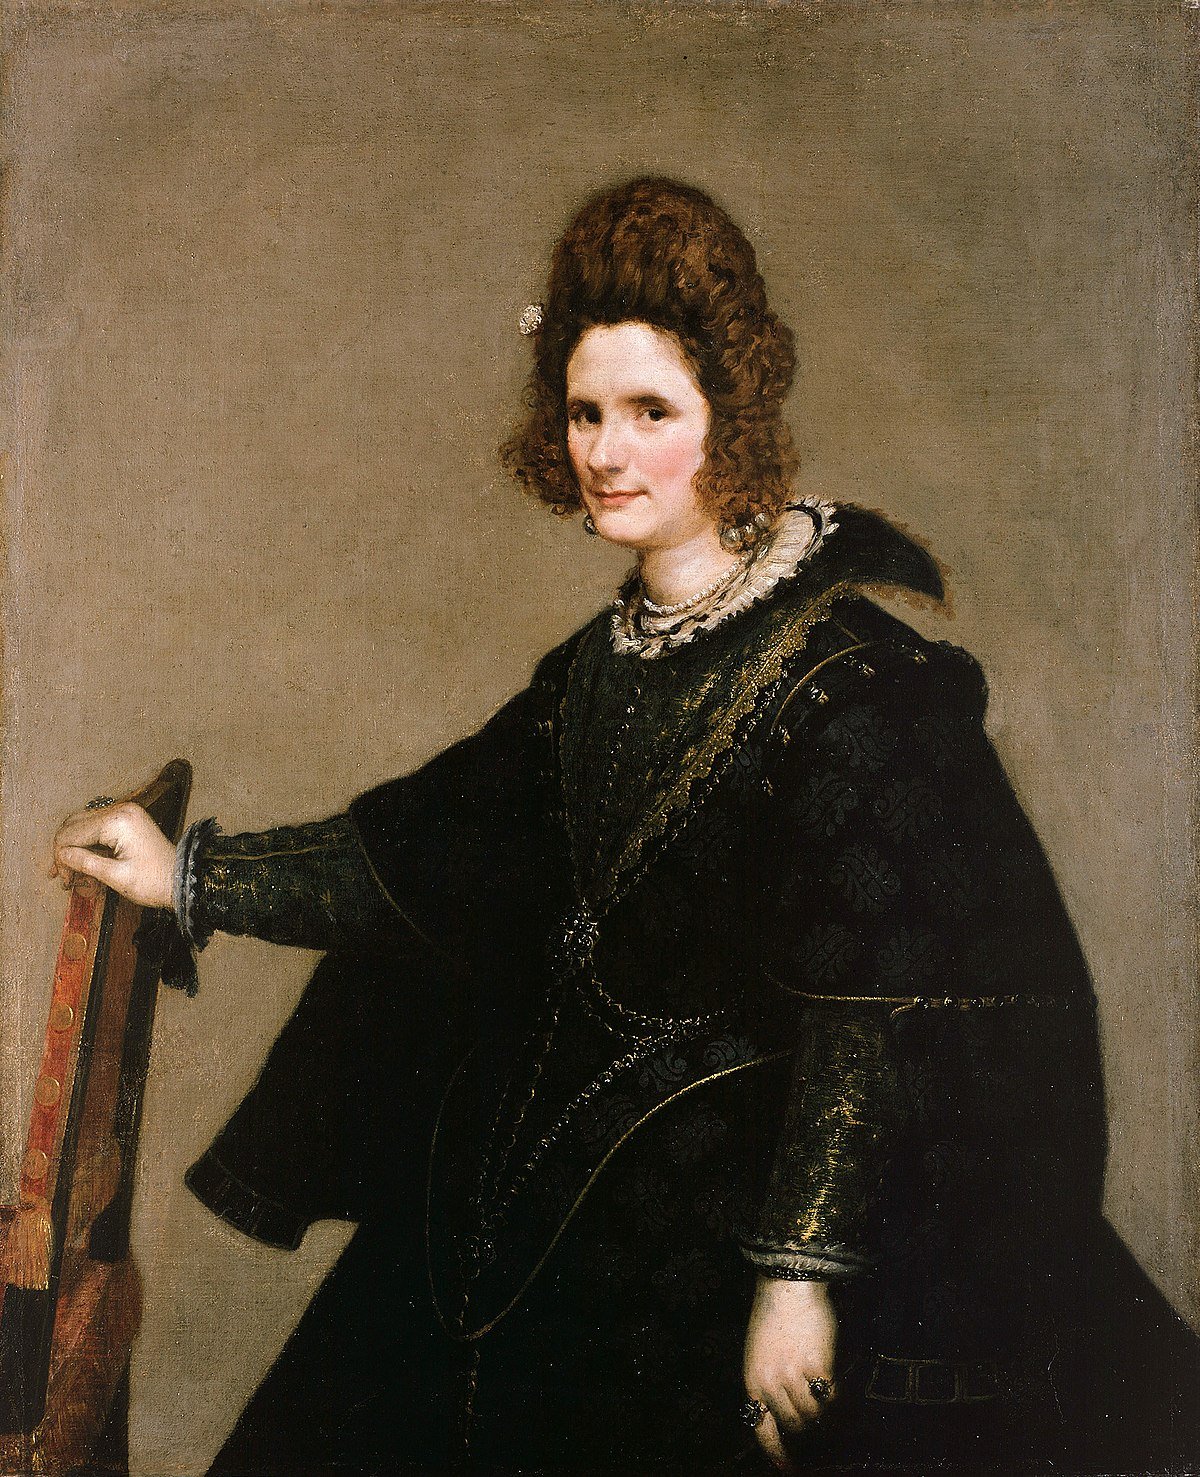 Retrat d'una dama Velázquez